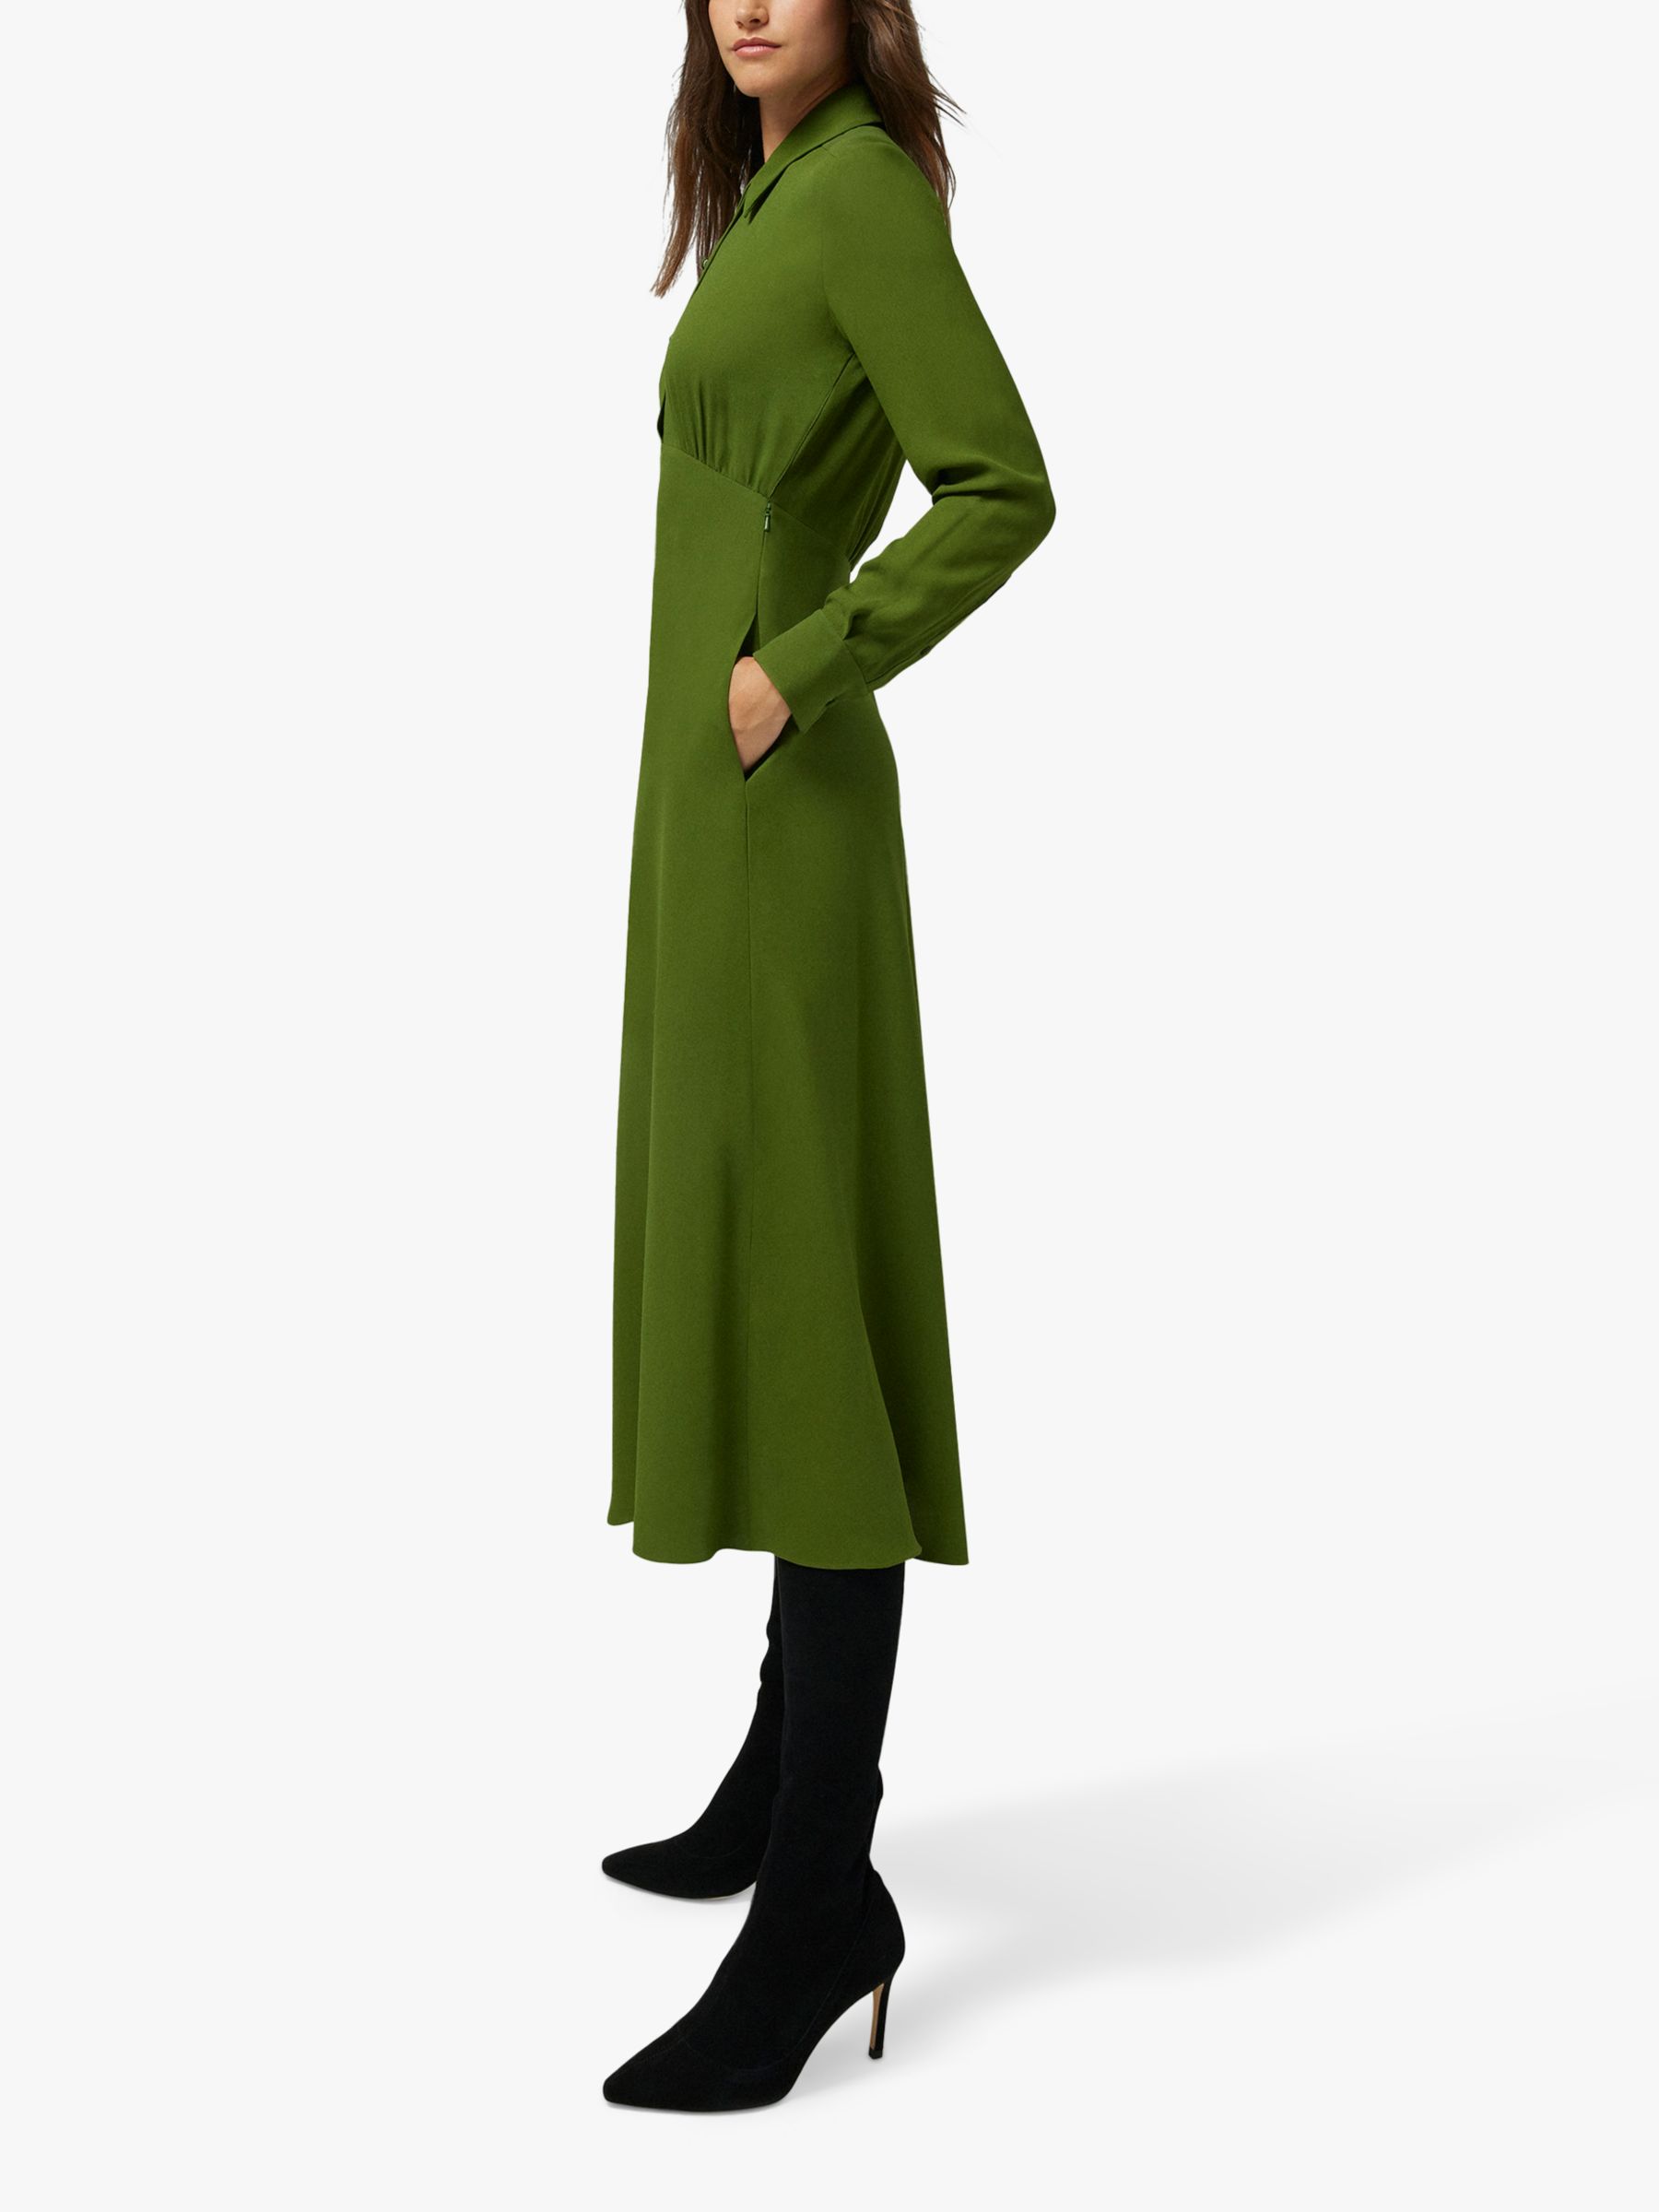 Jasper Conran Claudia Empire Line Crepe Midi Dress, Green, 12